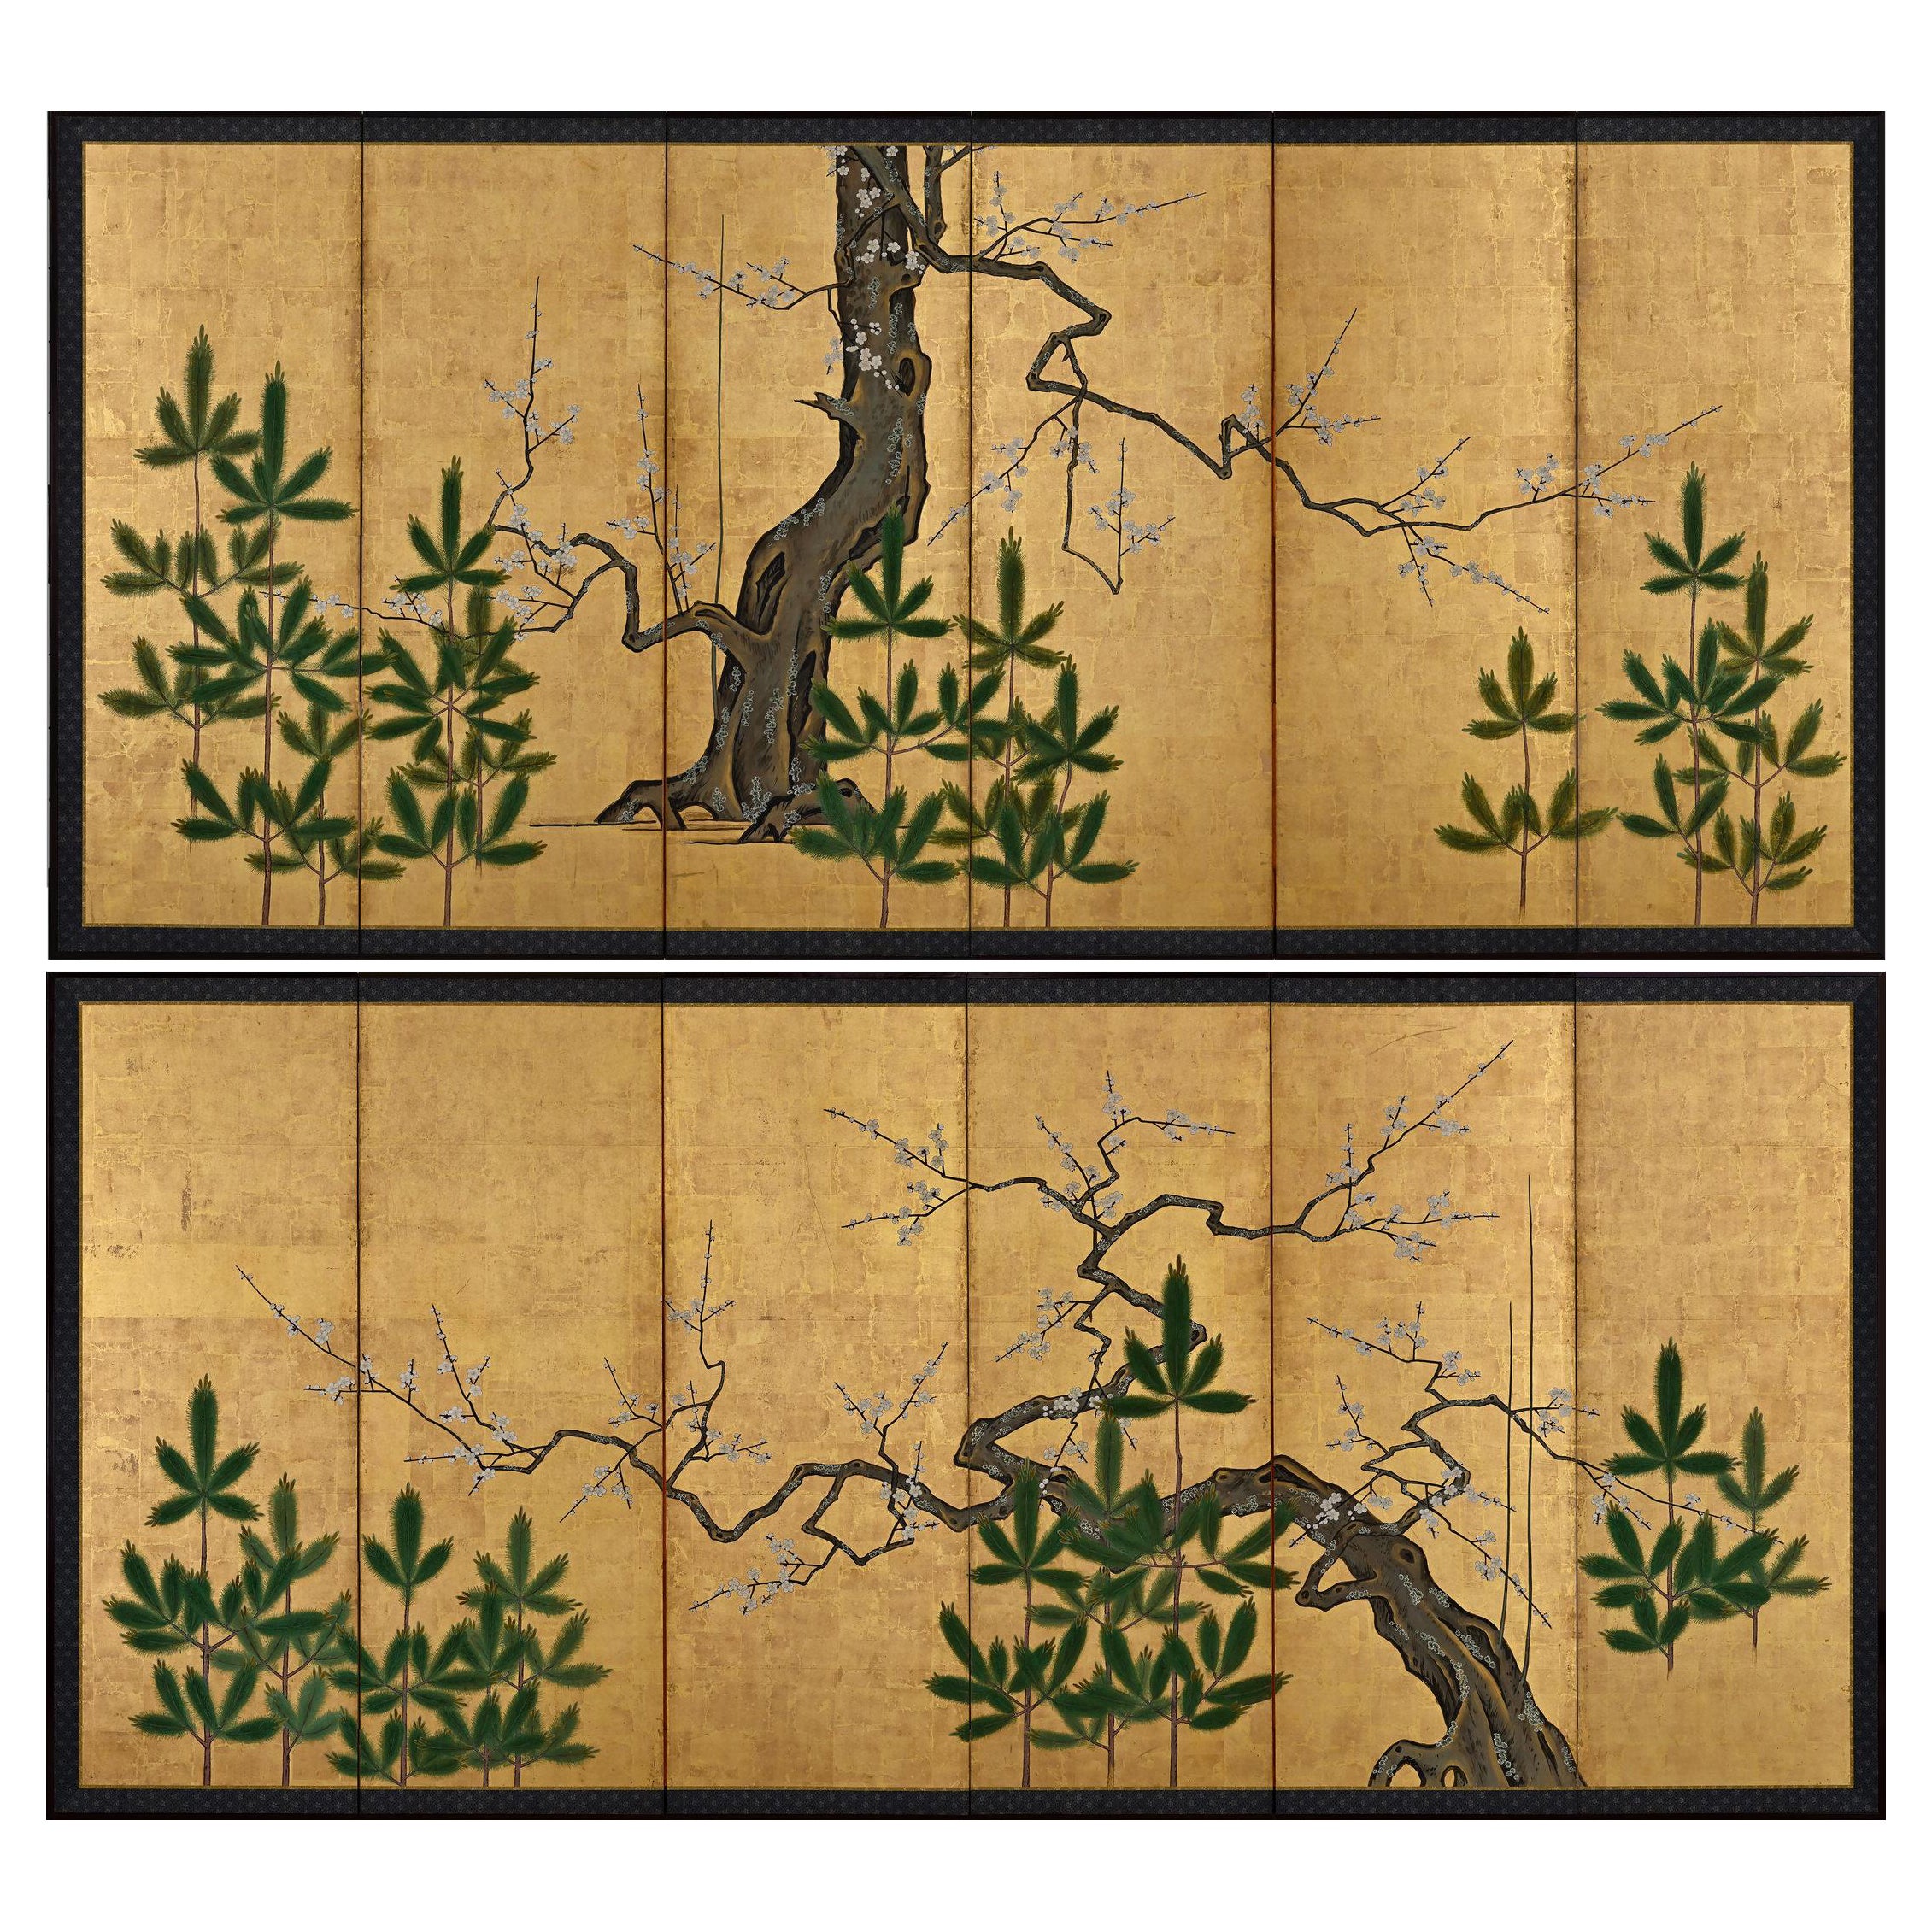 Paire d'écrans japonais du 18ème siècle. Plum & Young Pines École de Kano.